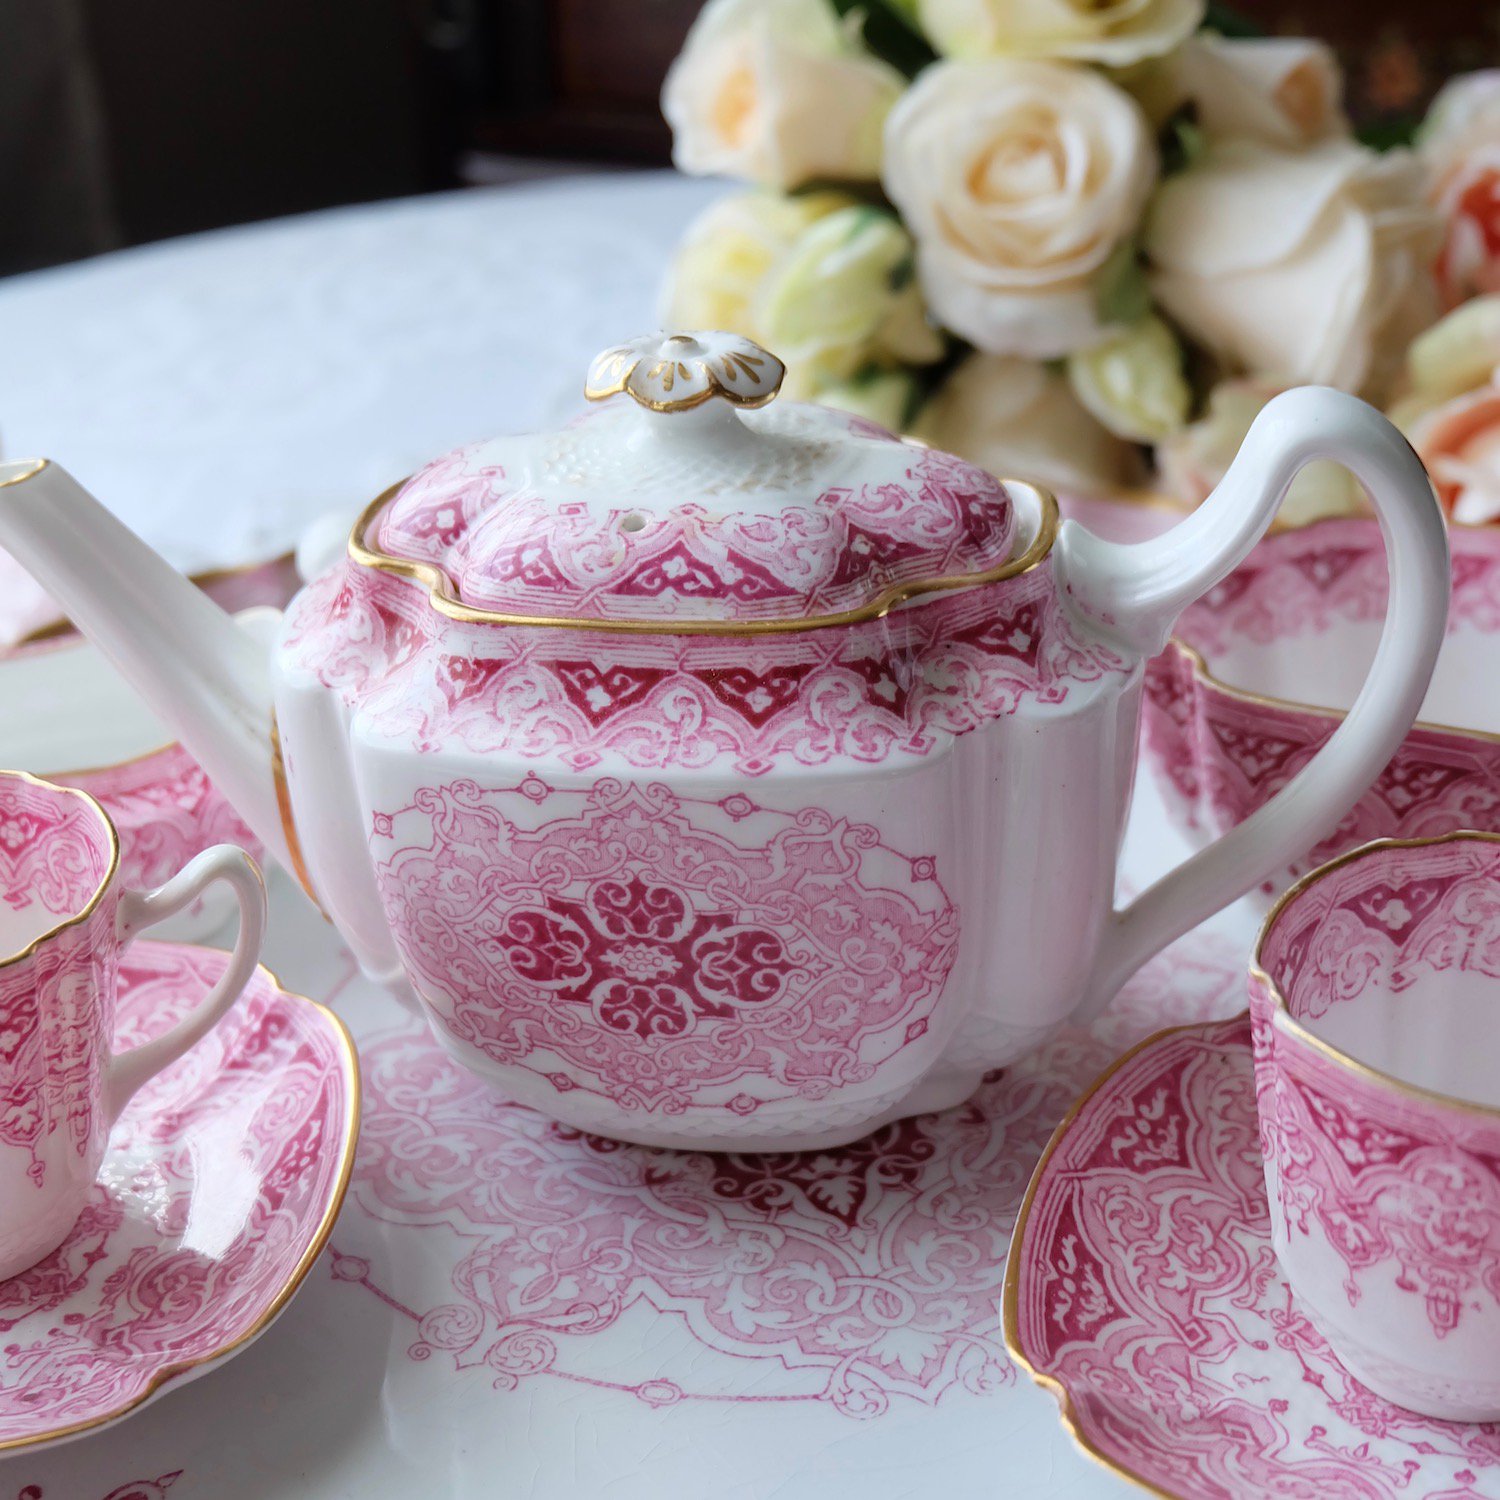 ヴィクトリア時代・コープランド ピンクのゴシックパターンが華やかなミニチュアティーセットをイギリス コッツウォルズからお届けいたします。